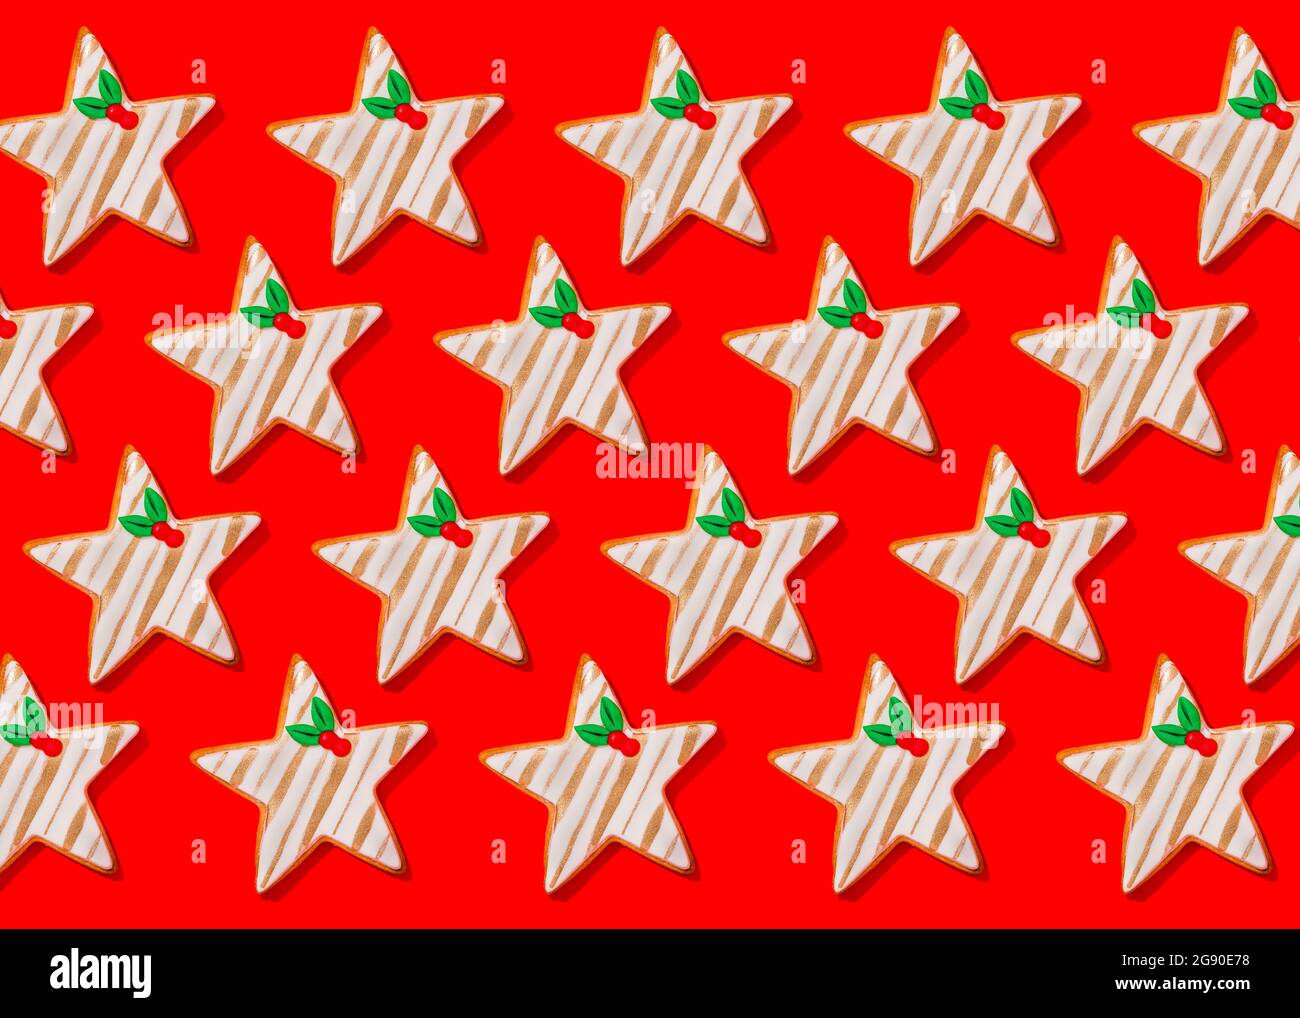 Motif de biscuits de Noël en forme d'étoiles posé sur fond rouge vif Banque D'Images